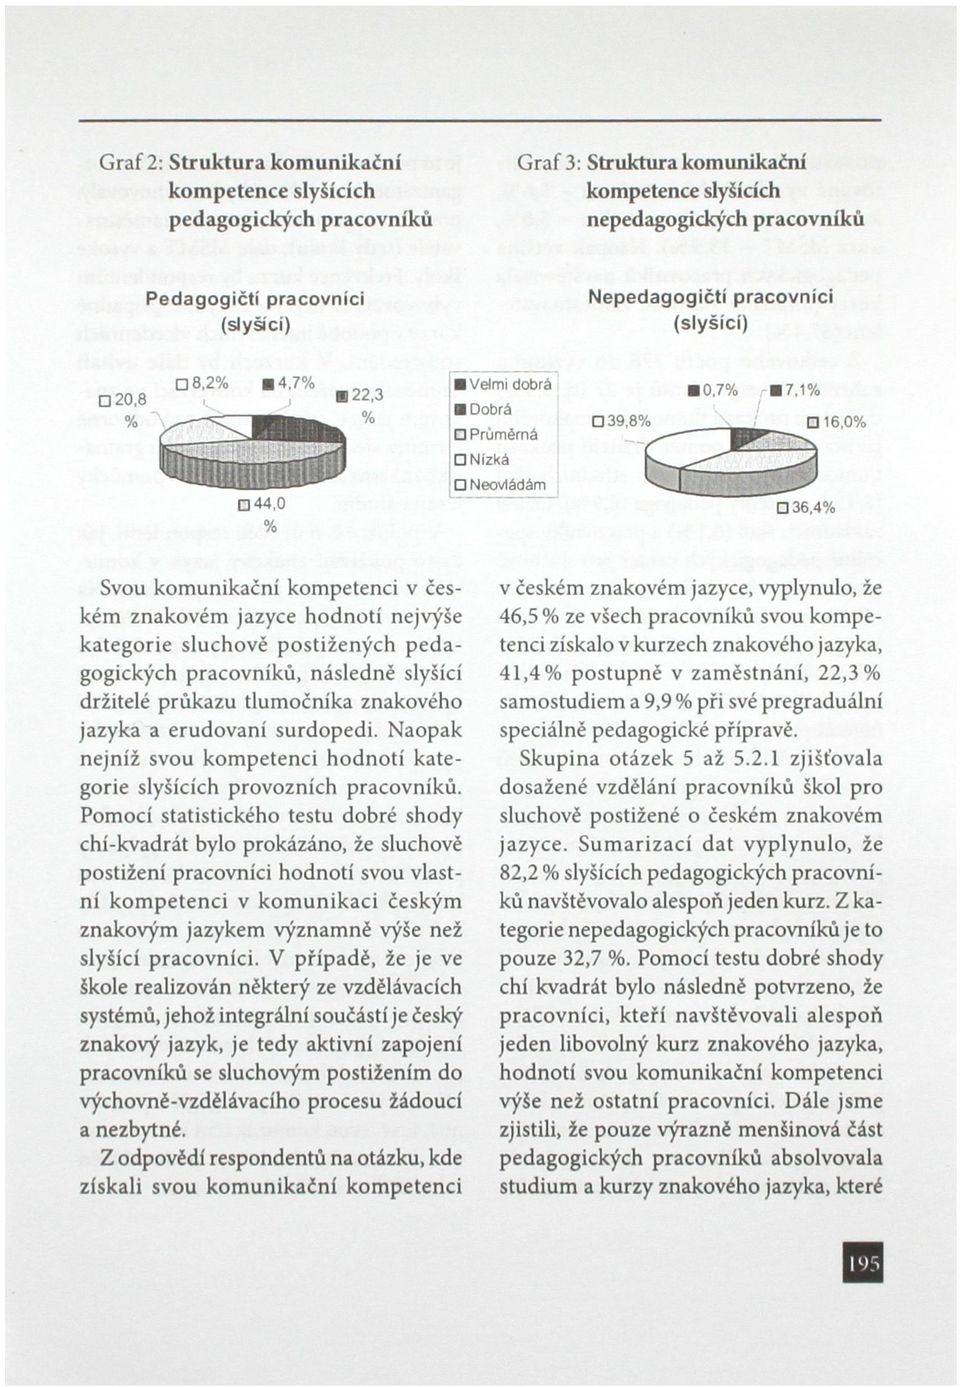 1% 16,0% 36,4% Svou komunikační kompetenci v českém znakovém jazyce hodnotí nejvýše kategorie sluchově postižených pedagogických pracovníků, následně slyšící držitelé průkazu tlumočníka znakového